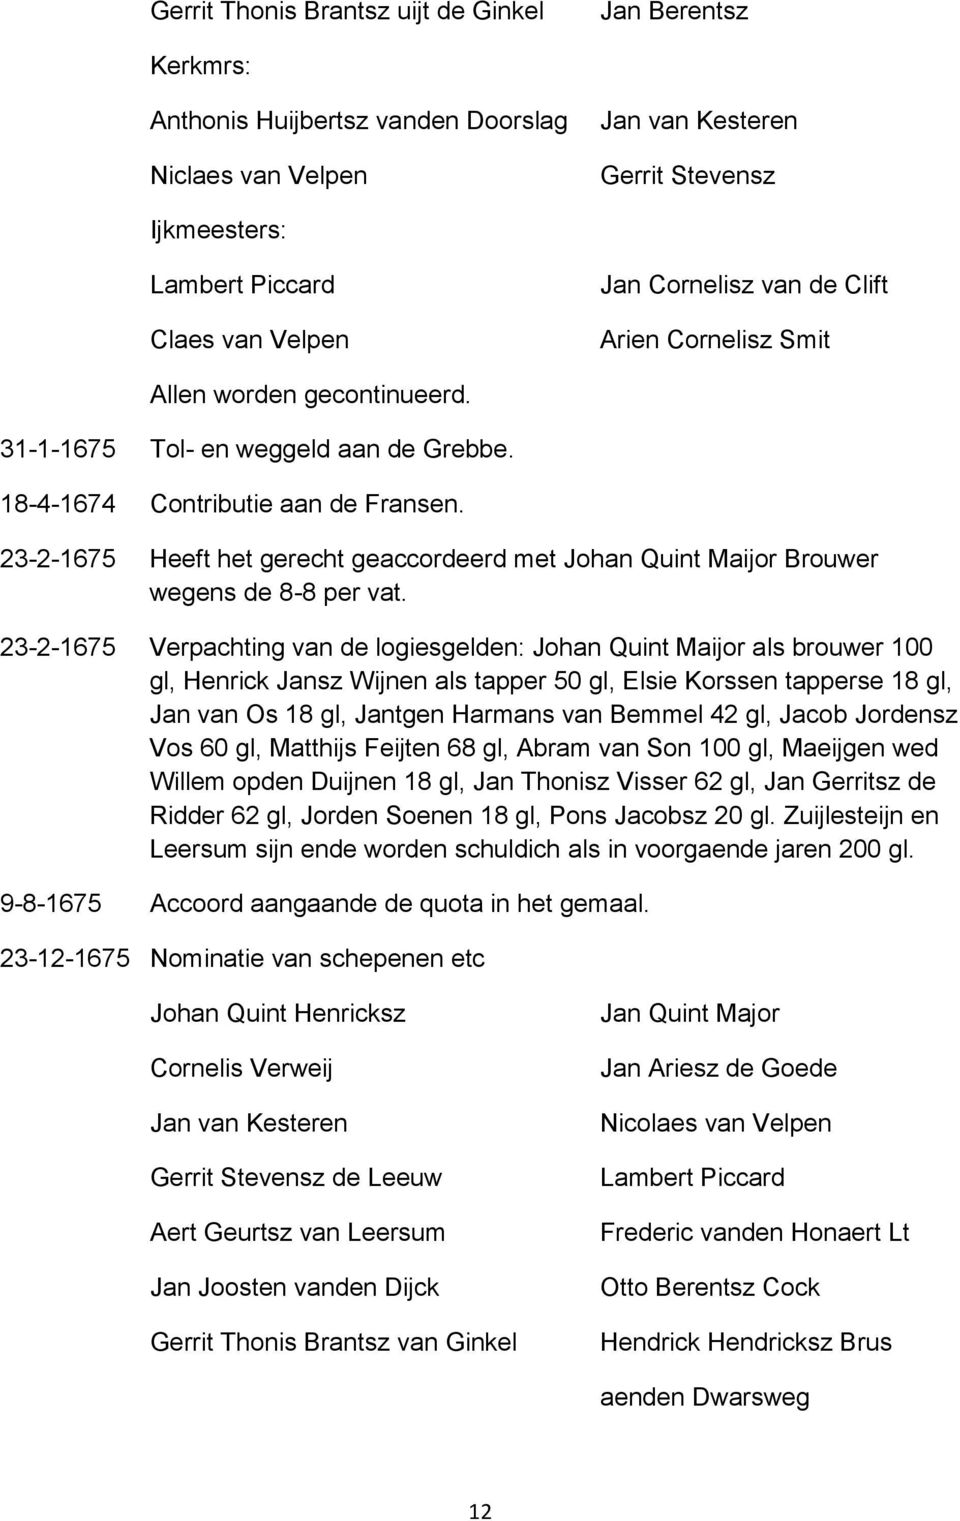 23-2-1675 Heeft het gerecht geaccordeerd met Johan Quint Maijor Brouwer wegens de 8-8 per vat.